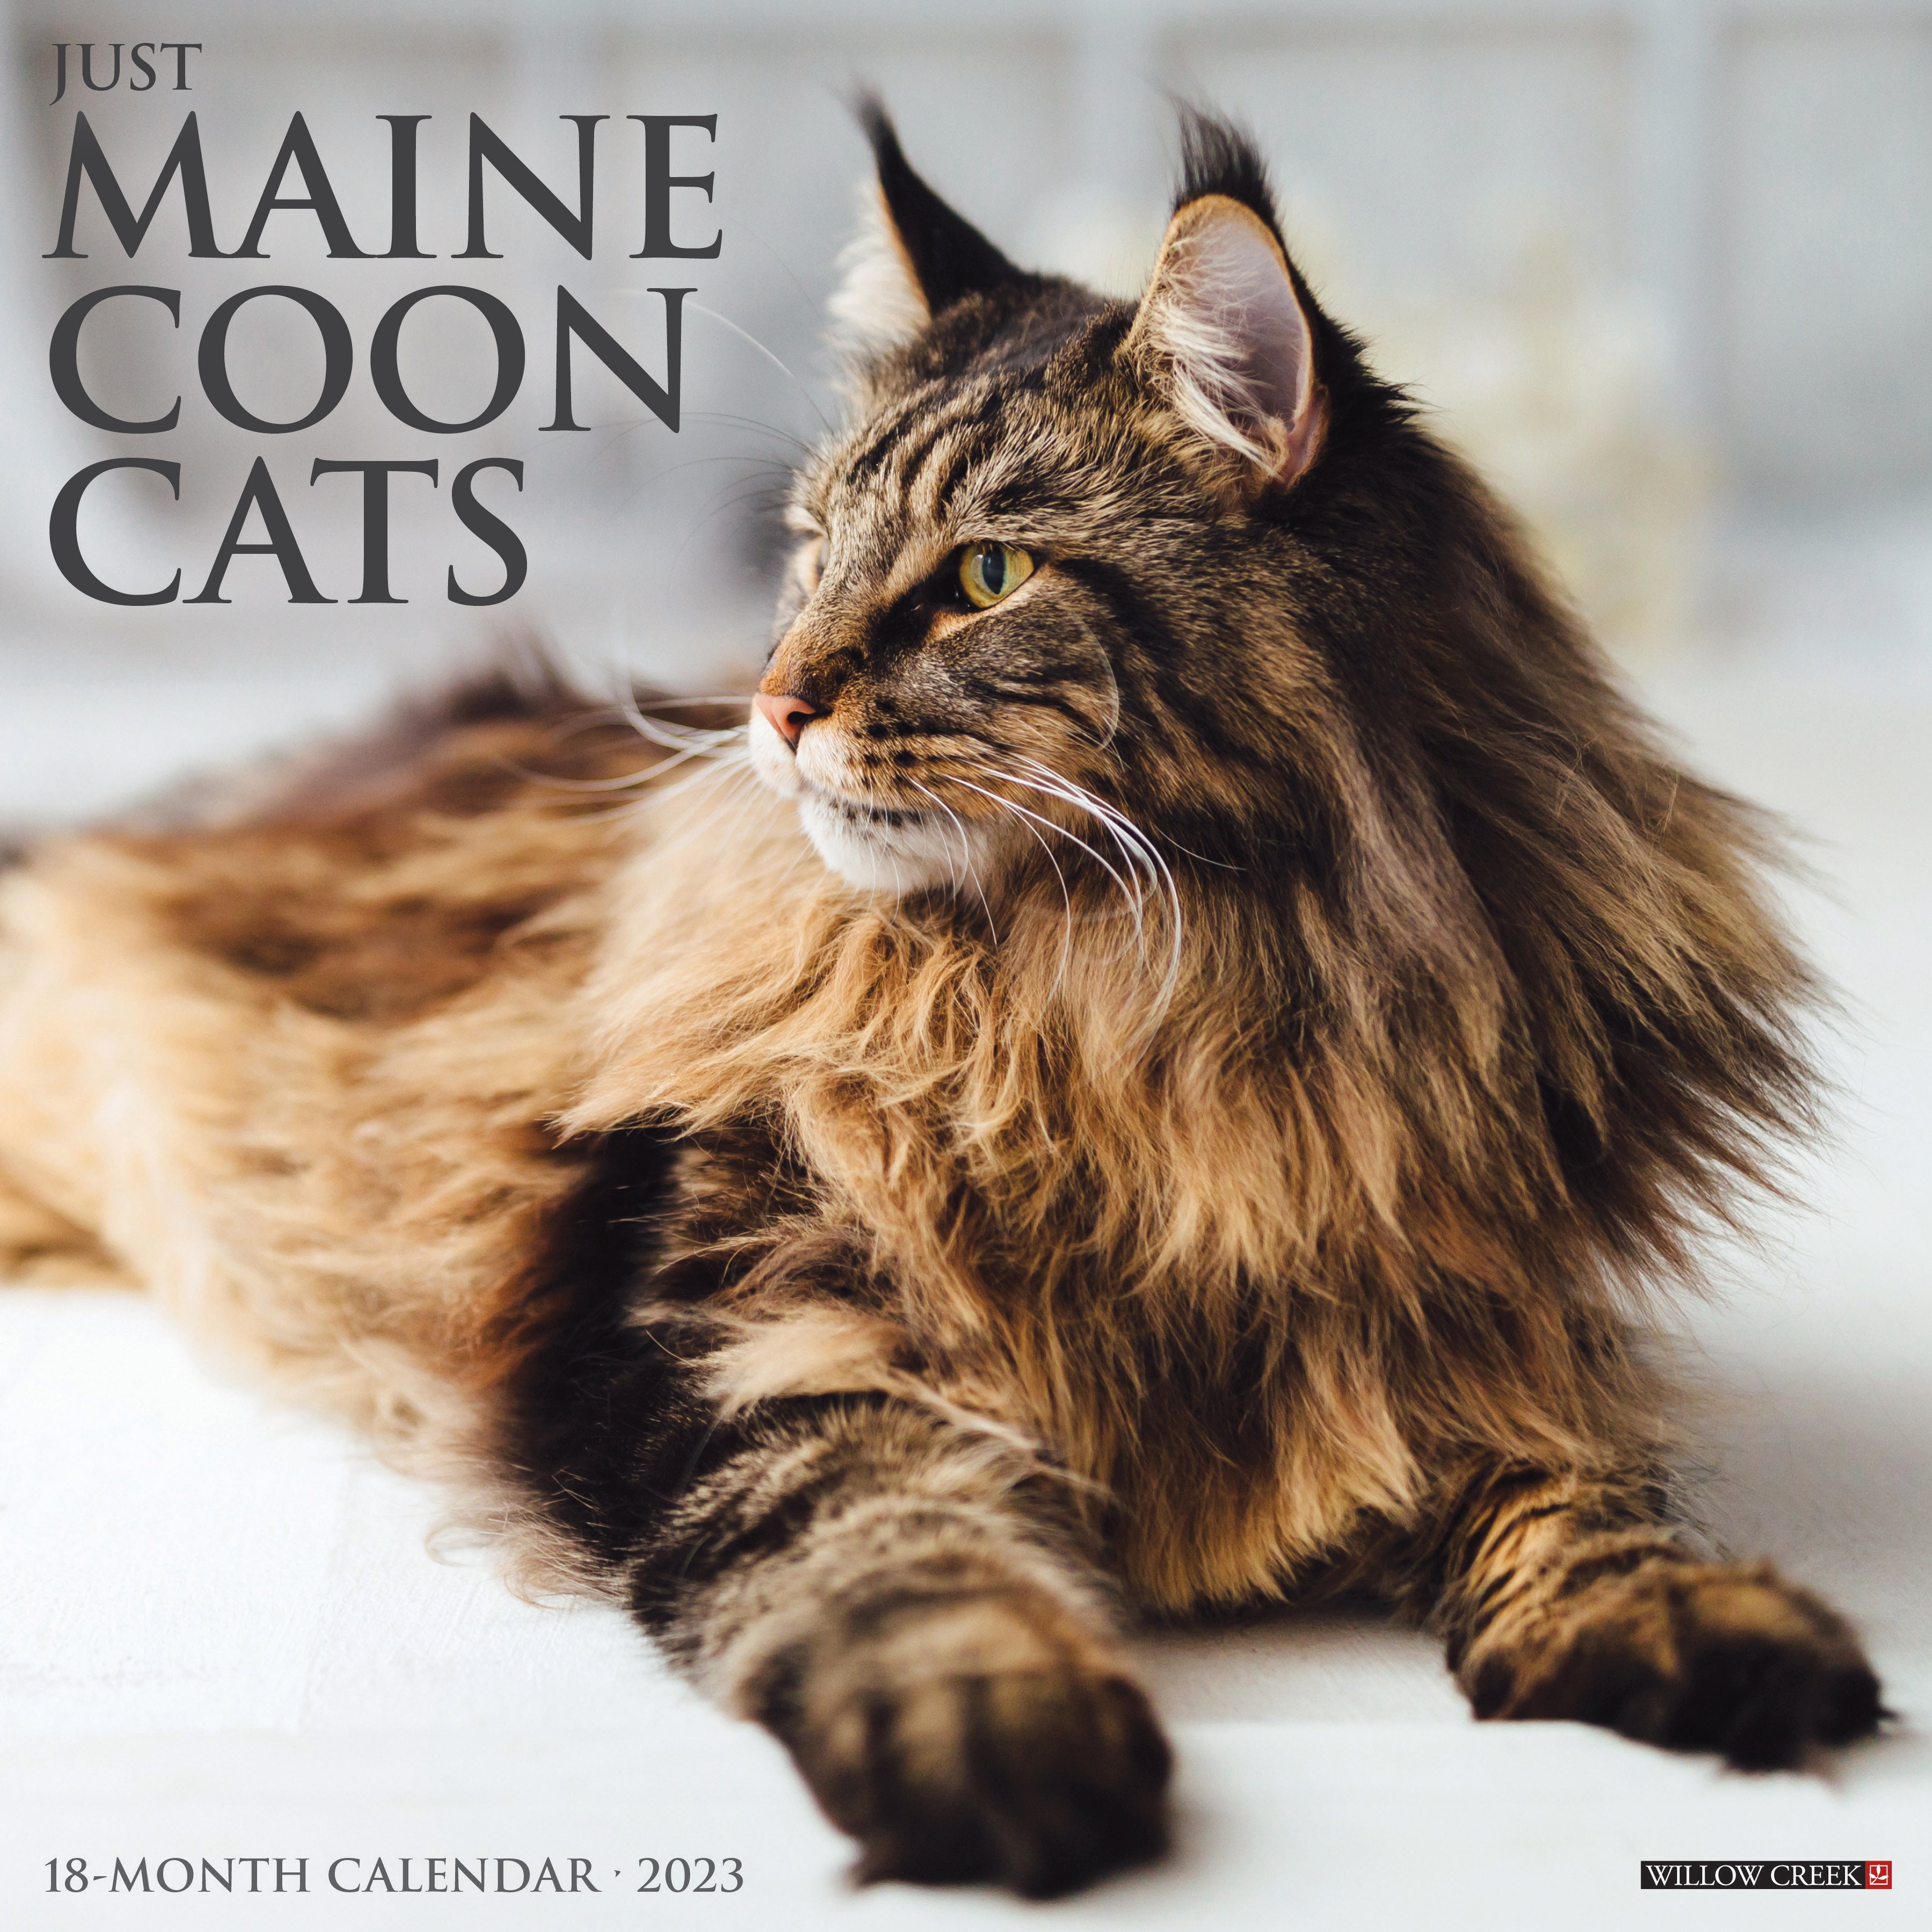 just-maine-coon-cats-2023-wall-calendar-walmart